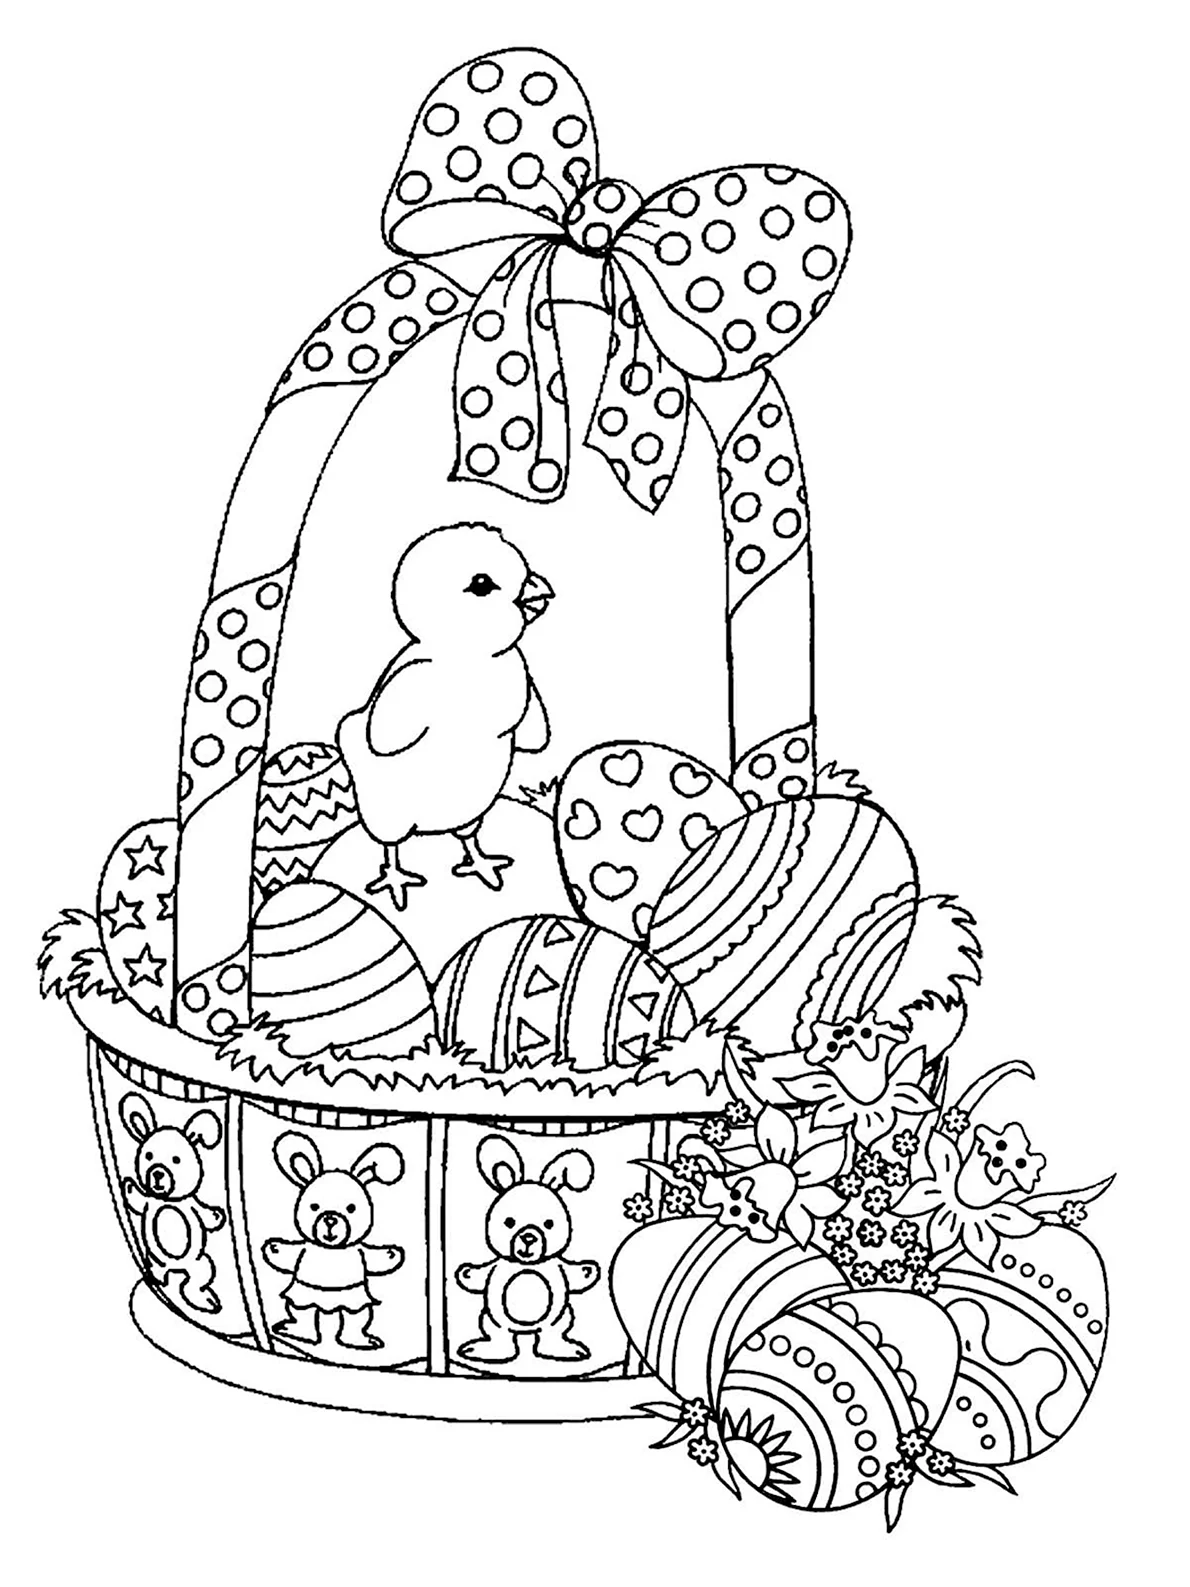 Рисунок на пасху карандашом. Раскраска Пасхальный кулич с яйцами. Раскраски пасхальные для детей. Раскраска Пасха для детей. Раскраска пасхальные яйца в корзине.